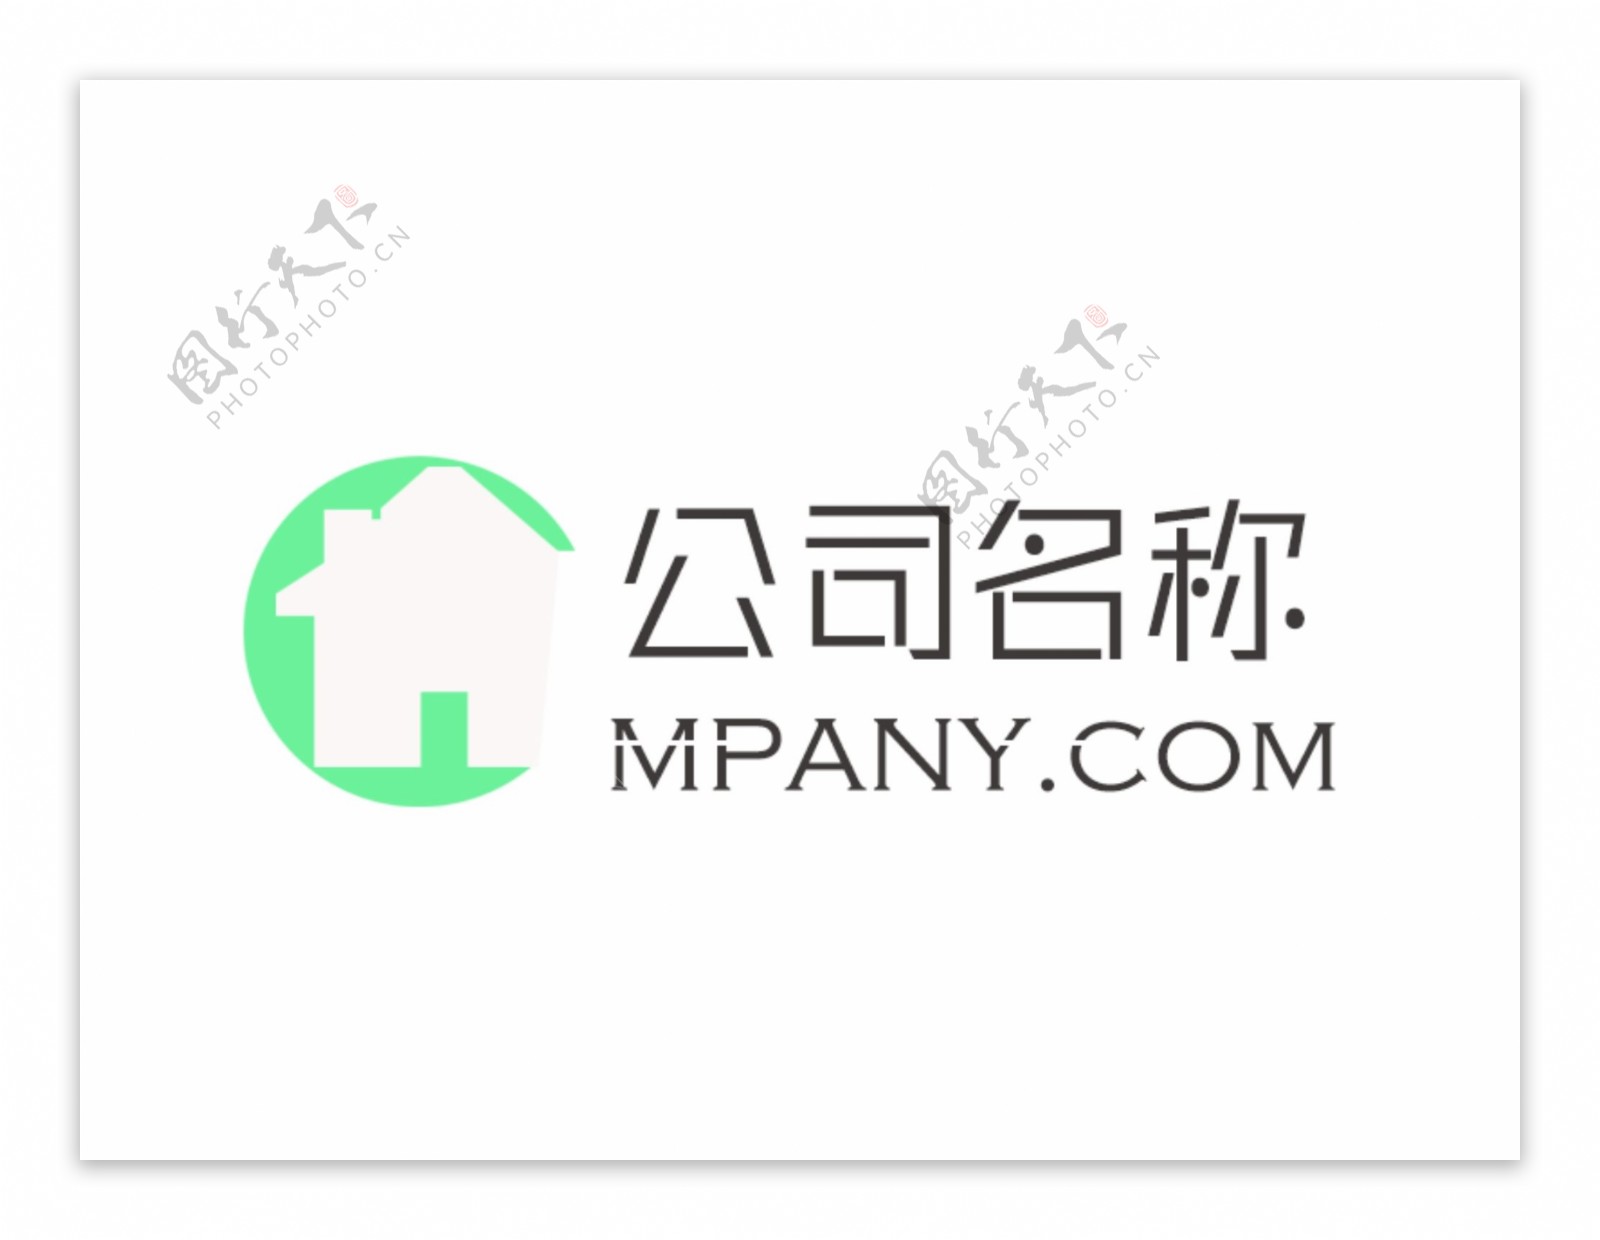 清新绿色小房子公司logo